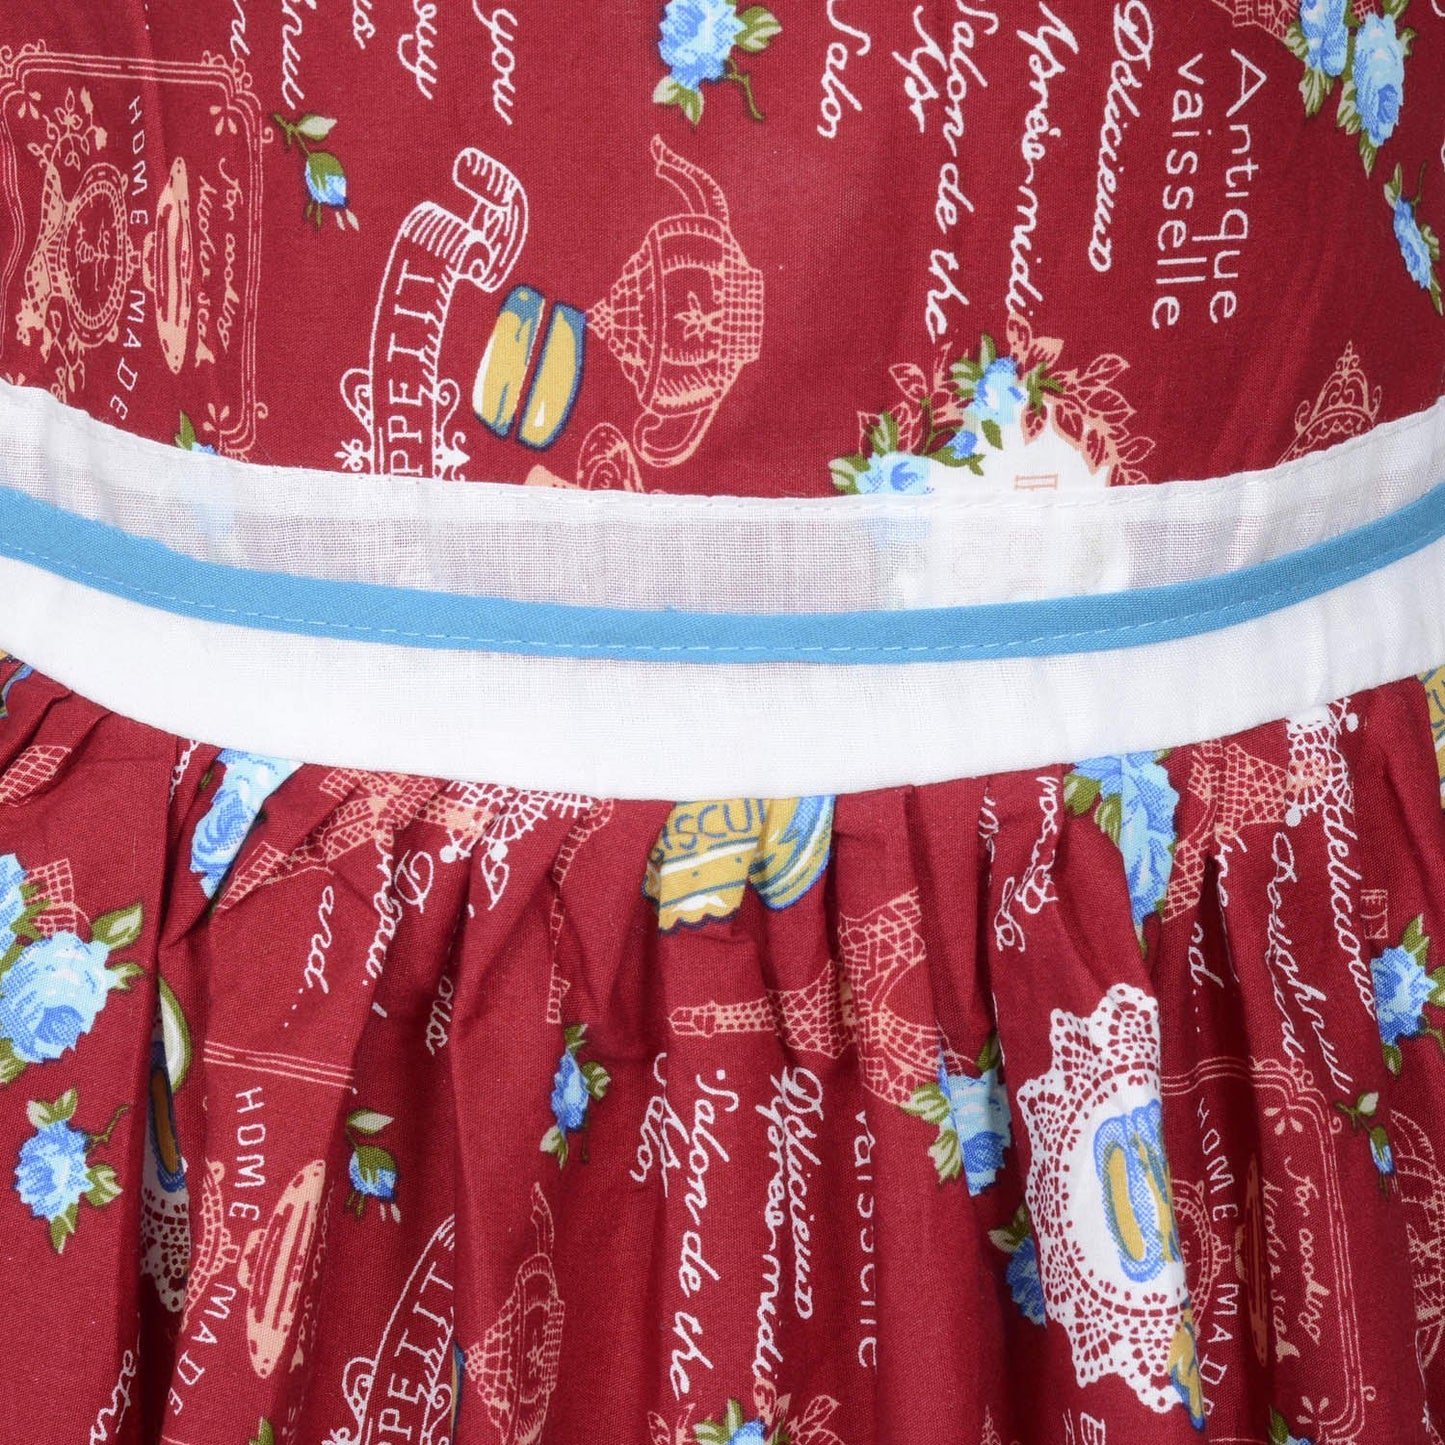 Baby Girls Party Wear Frock Dress ctn260rd - Wish Karo Cotton Wear - frocks Cotton Wear - baby dress